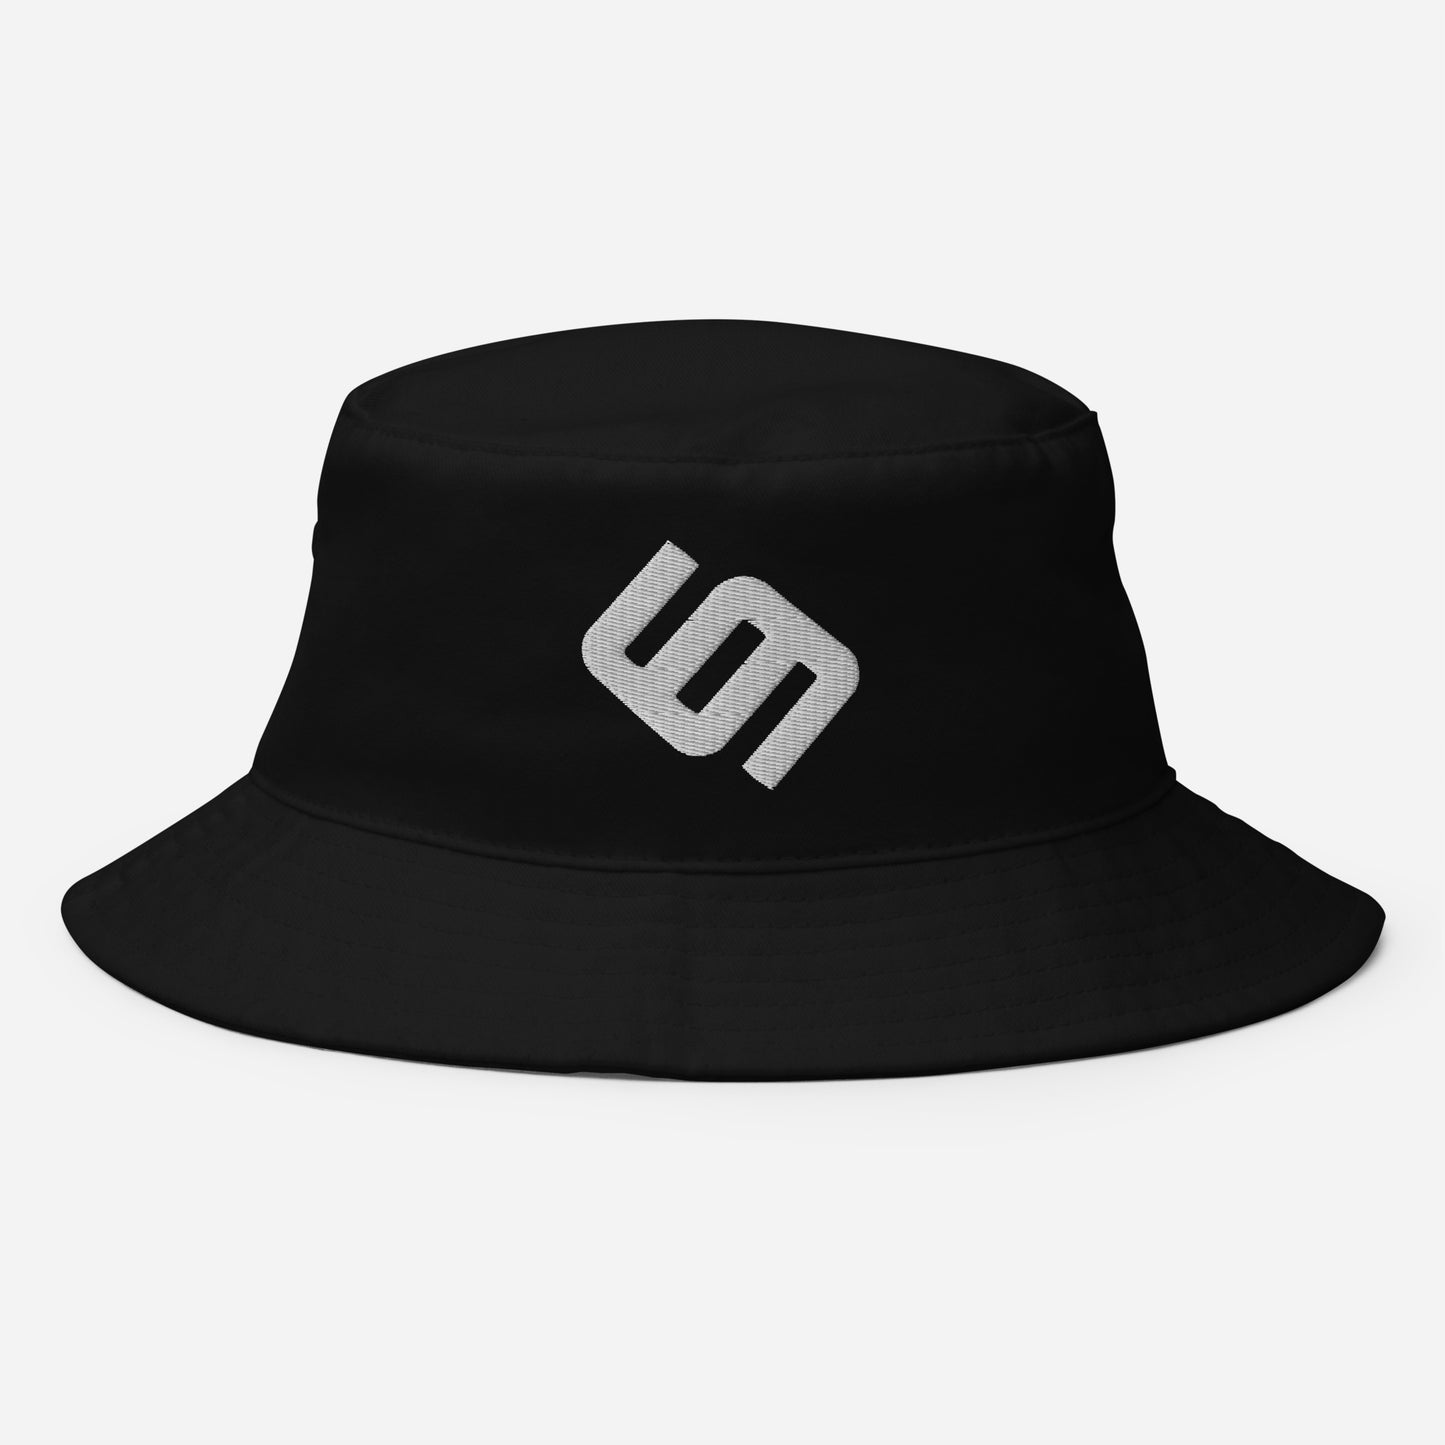 Marcellmar I Bucket Hat